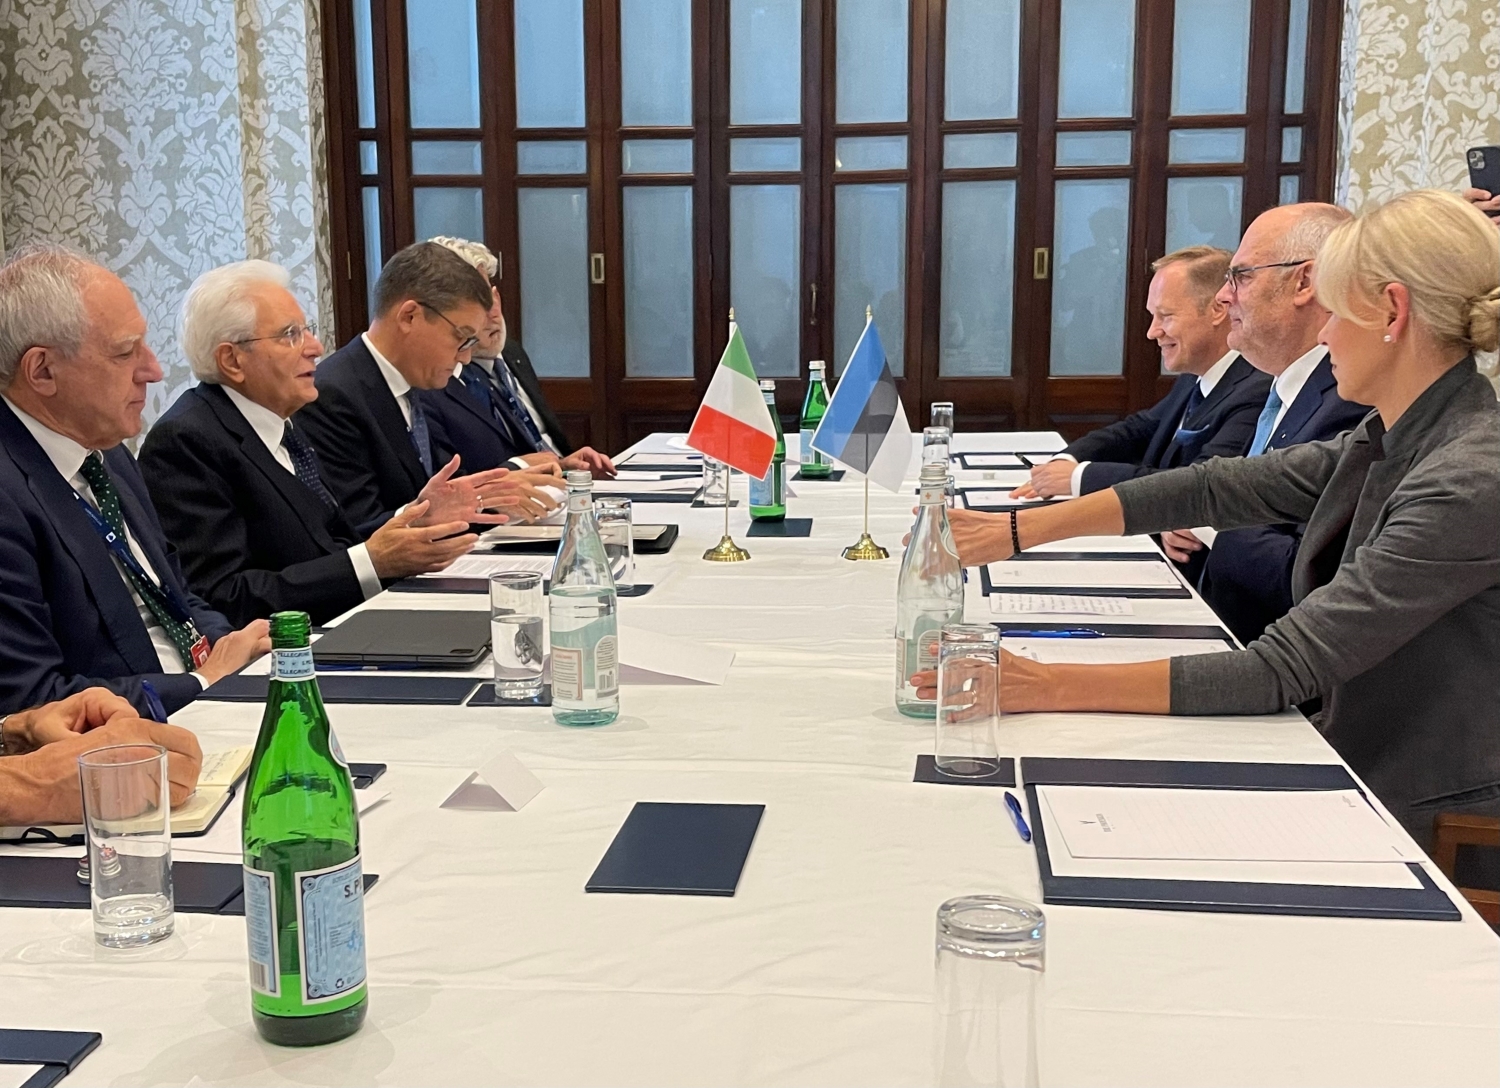 President Karis kõneles Itaalia riigipeaga Ukraina toetamisest Venemaa agressiooni vastu